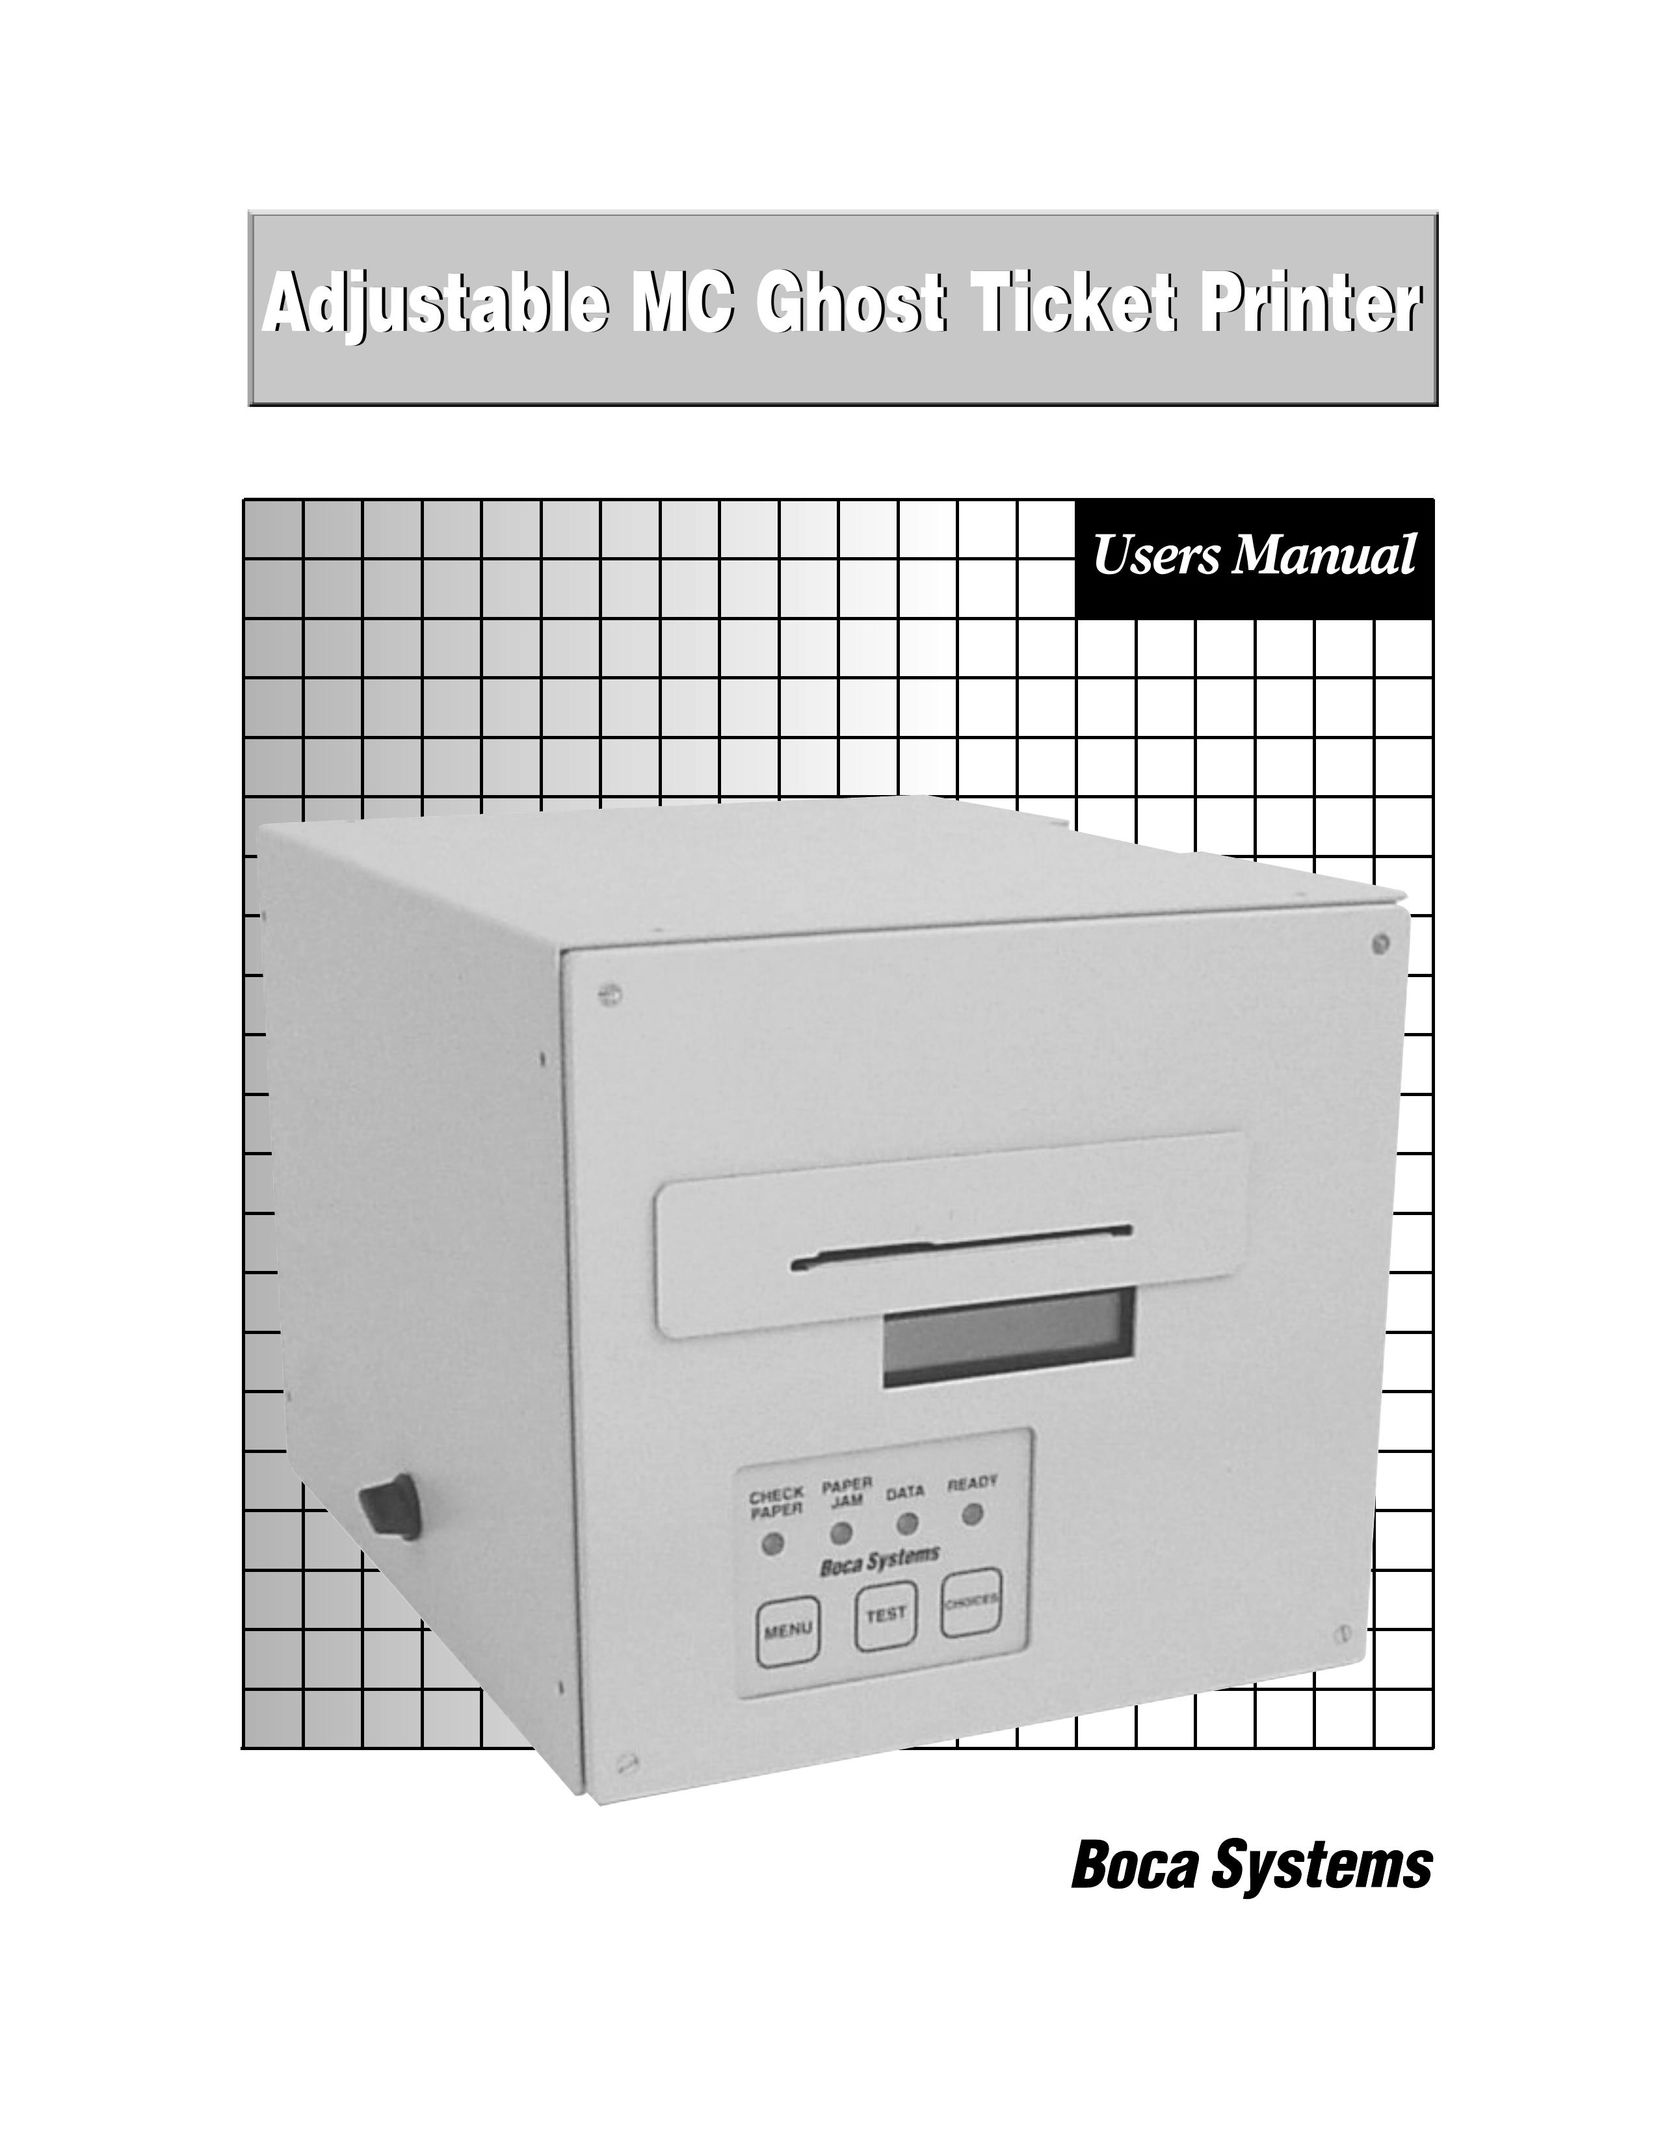 Boca Research Adjustable MC Ghost Printer User Manual